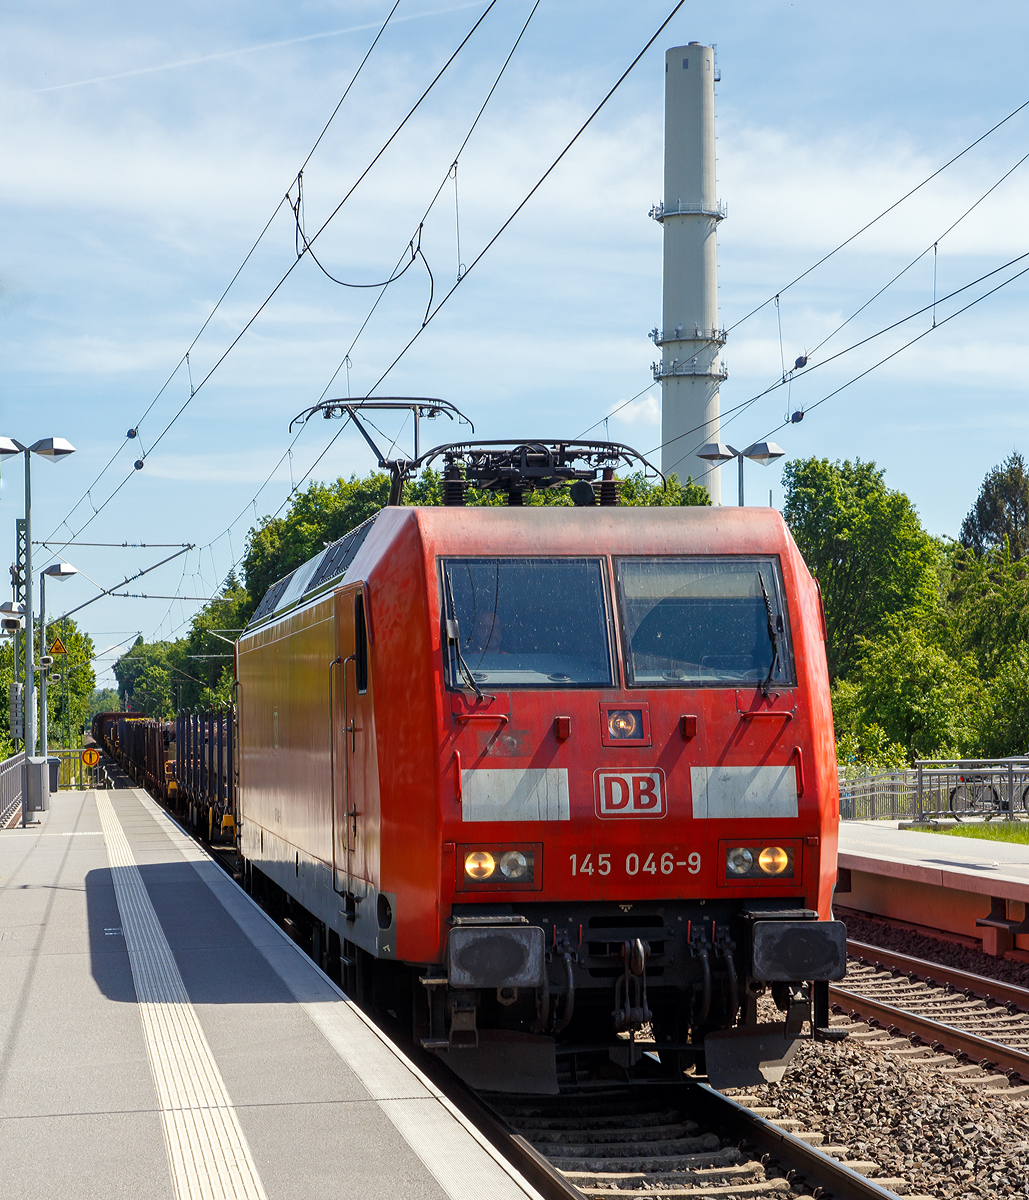 
Die 145 046-9 (91 80 6145 046-9 D-DB) der DB Cargo Deutschland AG fährt am 01.06.2019 mit einem gemischtem Güterzug durch den Bahnhof Bonn UN Campus (in Bonn-Gronau) in Richtung Norden.

Die TRAXX F140 AC wurde 1999 von ADtranz (ABB Daimler-Benz Transportation GmbH) in Kassel unter der Fabriknummer 33364 gebaut.